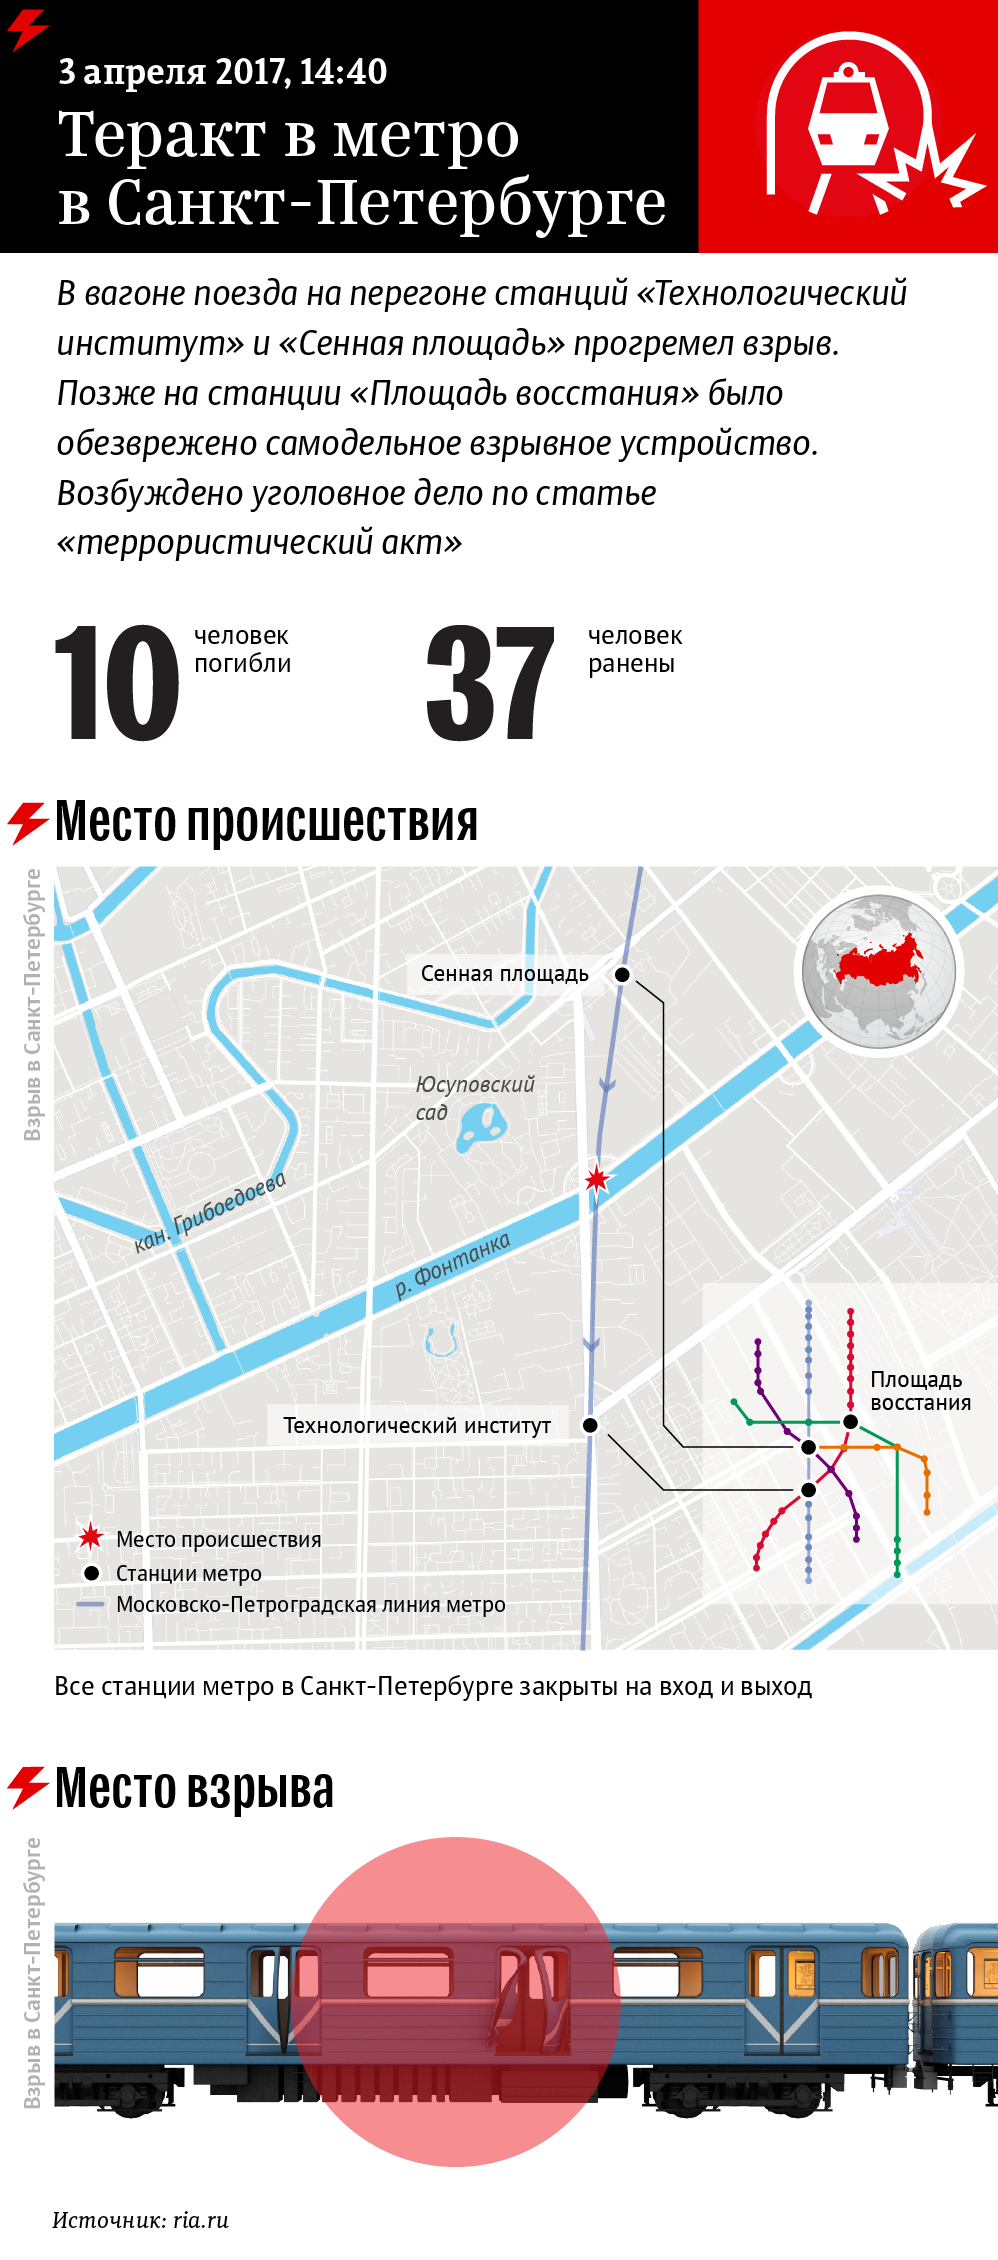 Теракт в метро Санкт-Петербурга. Инфографика